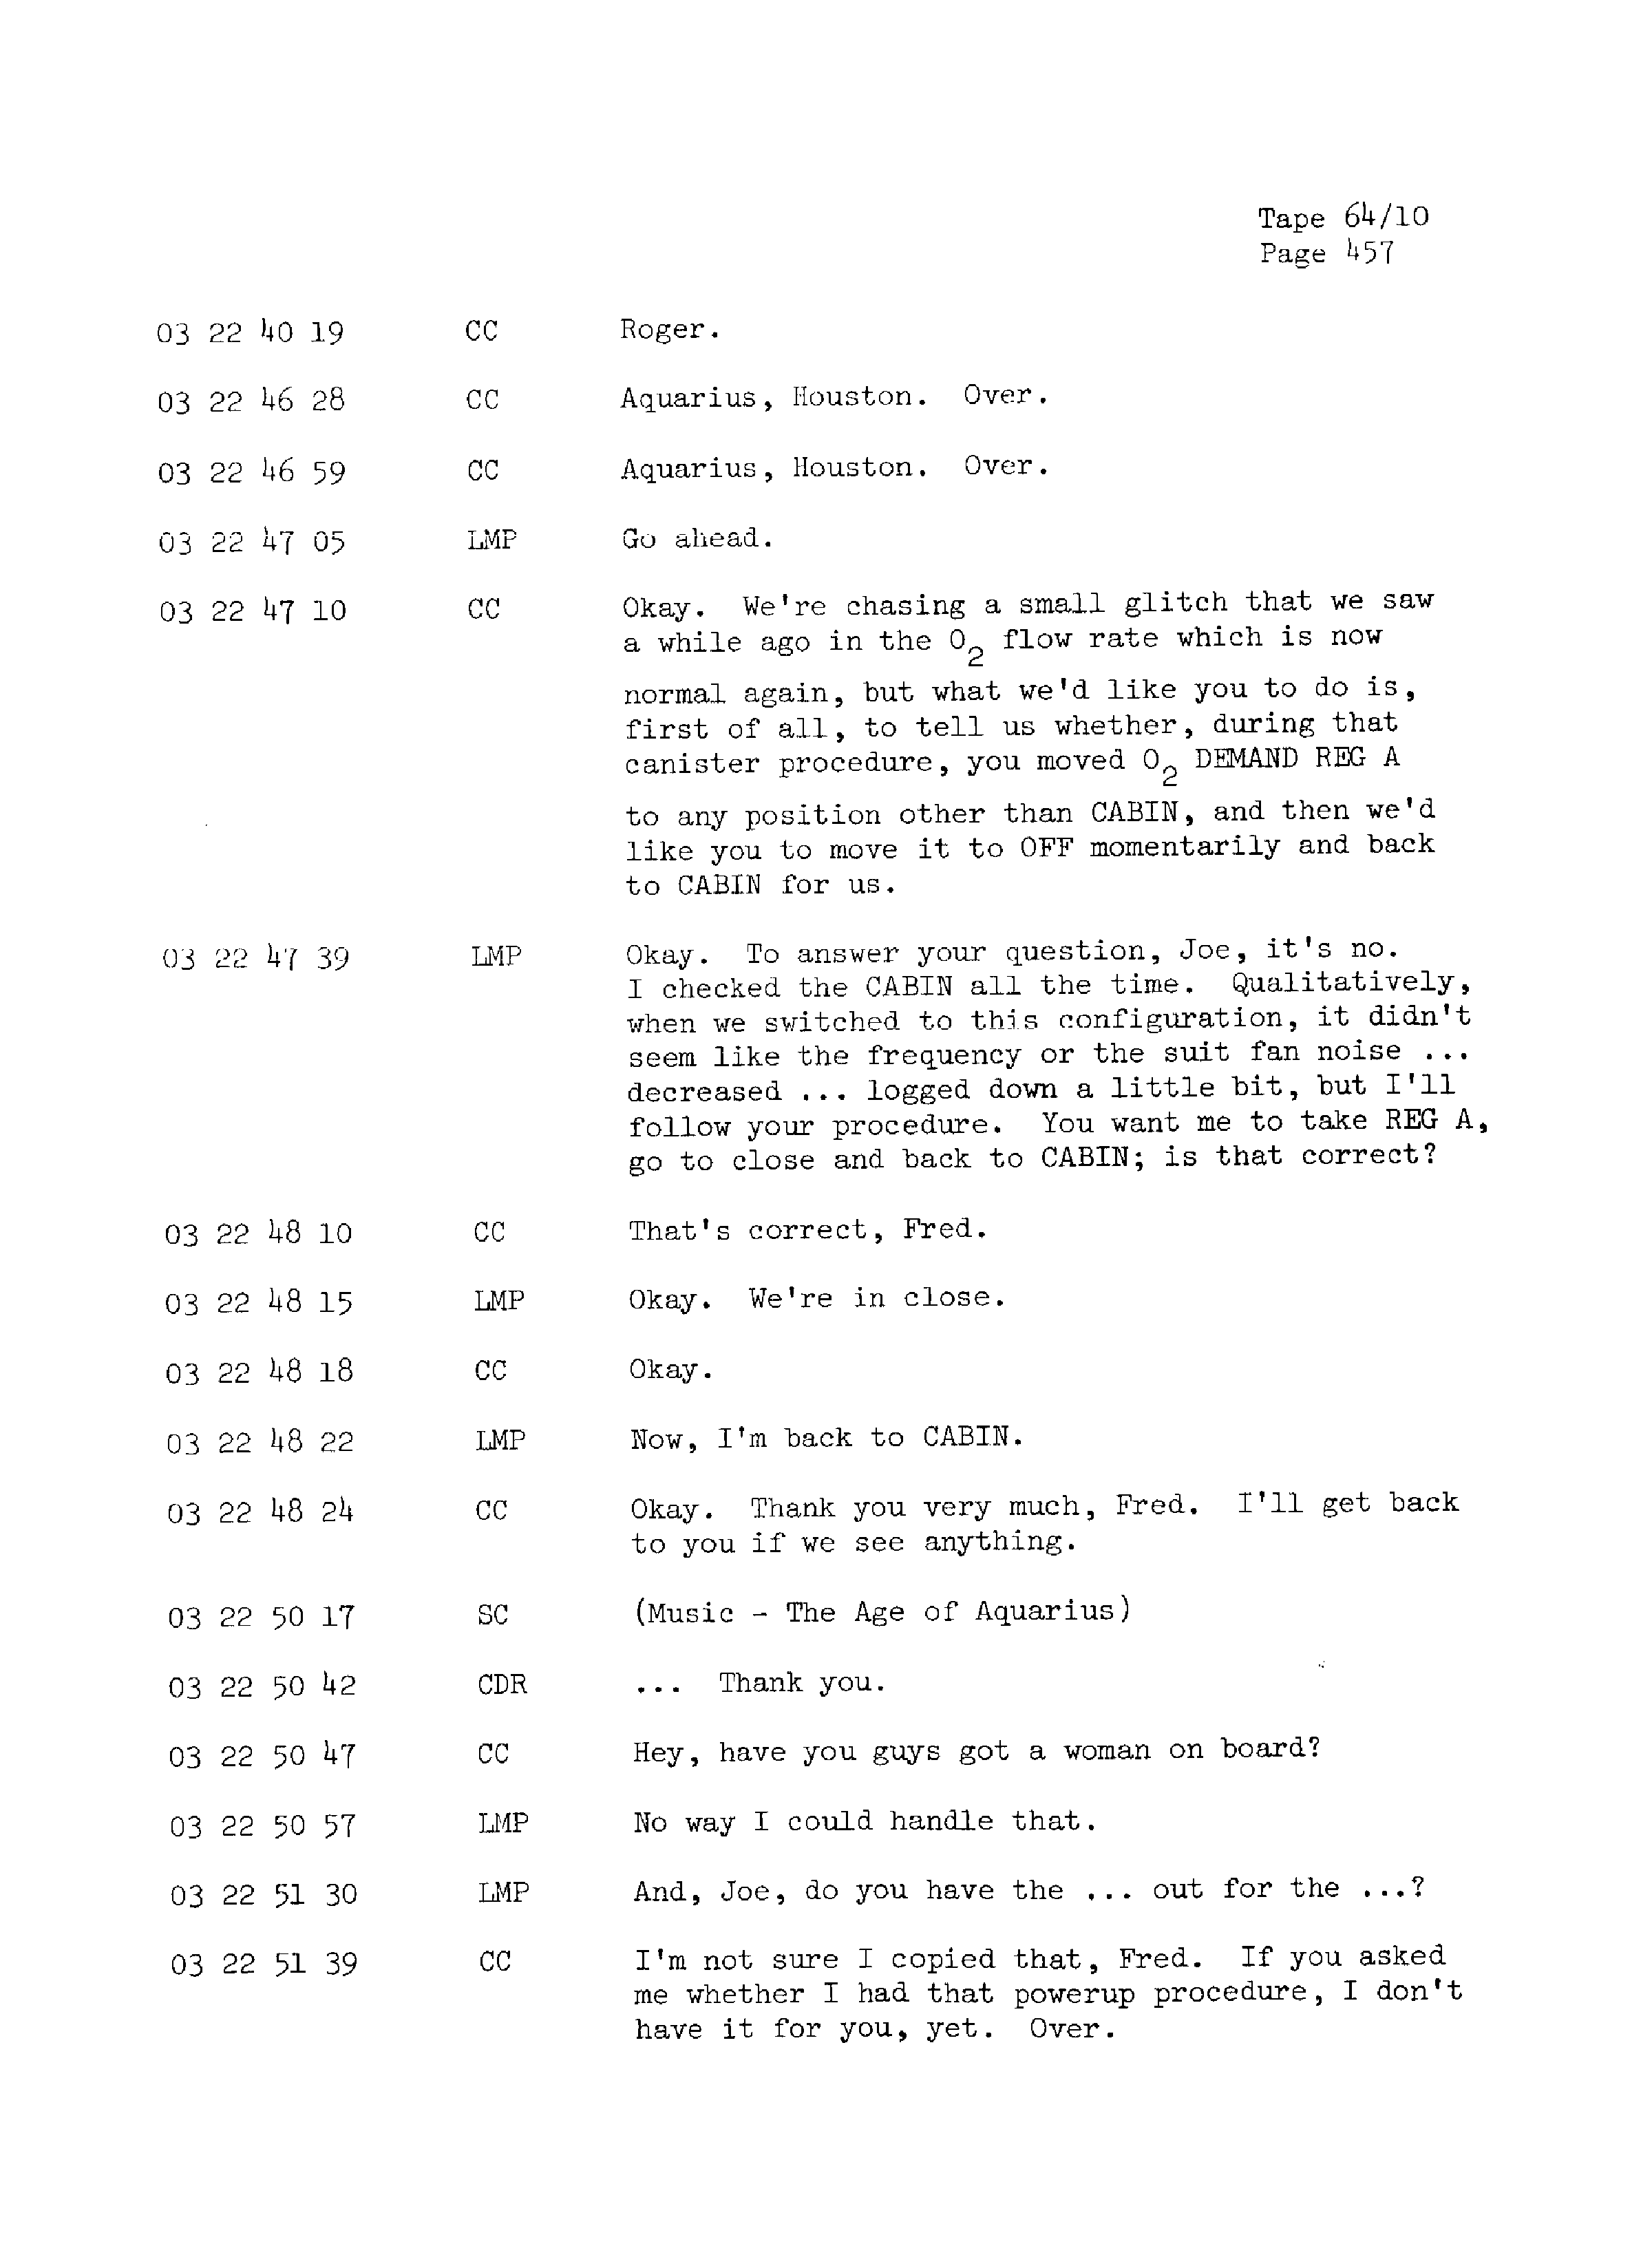 Page 464 of Apollo 13’s original transcript